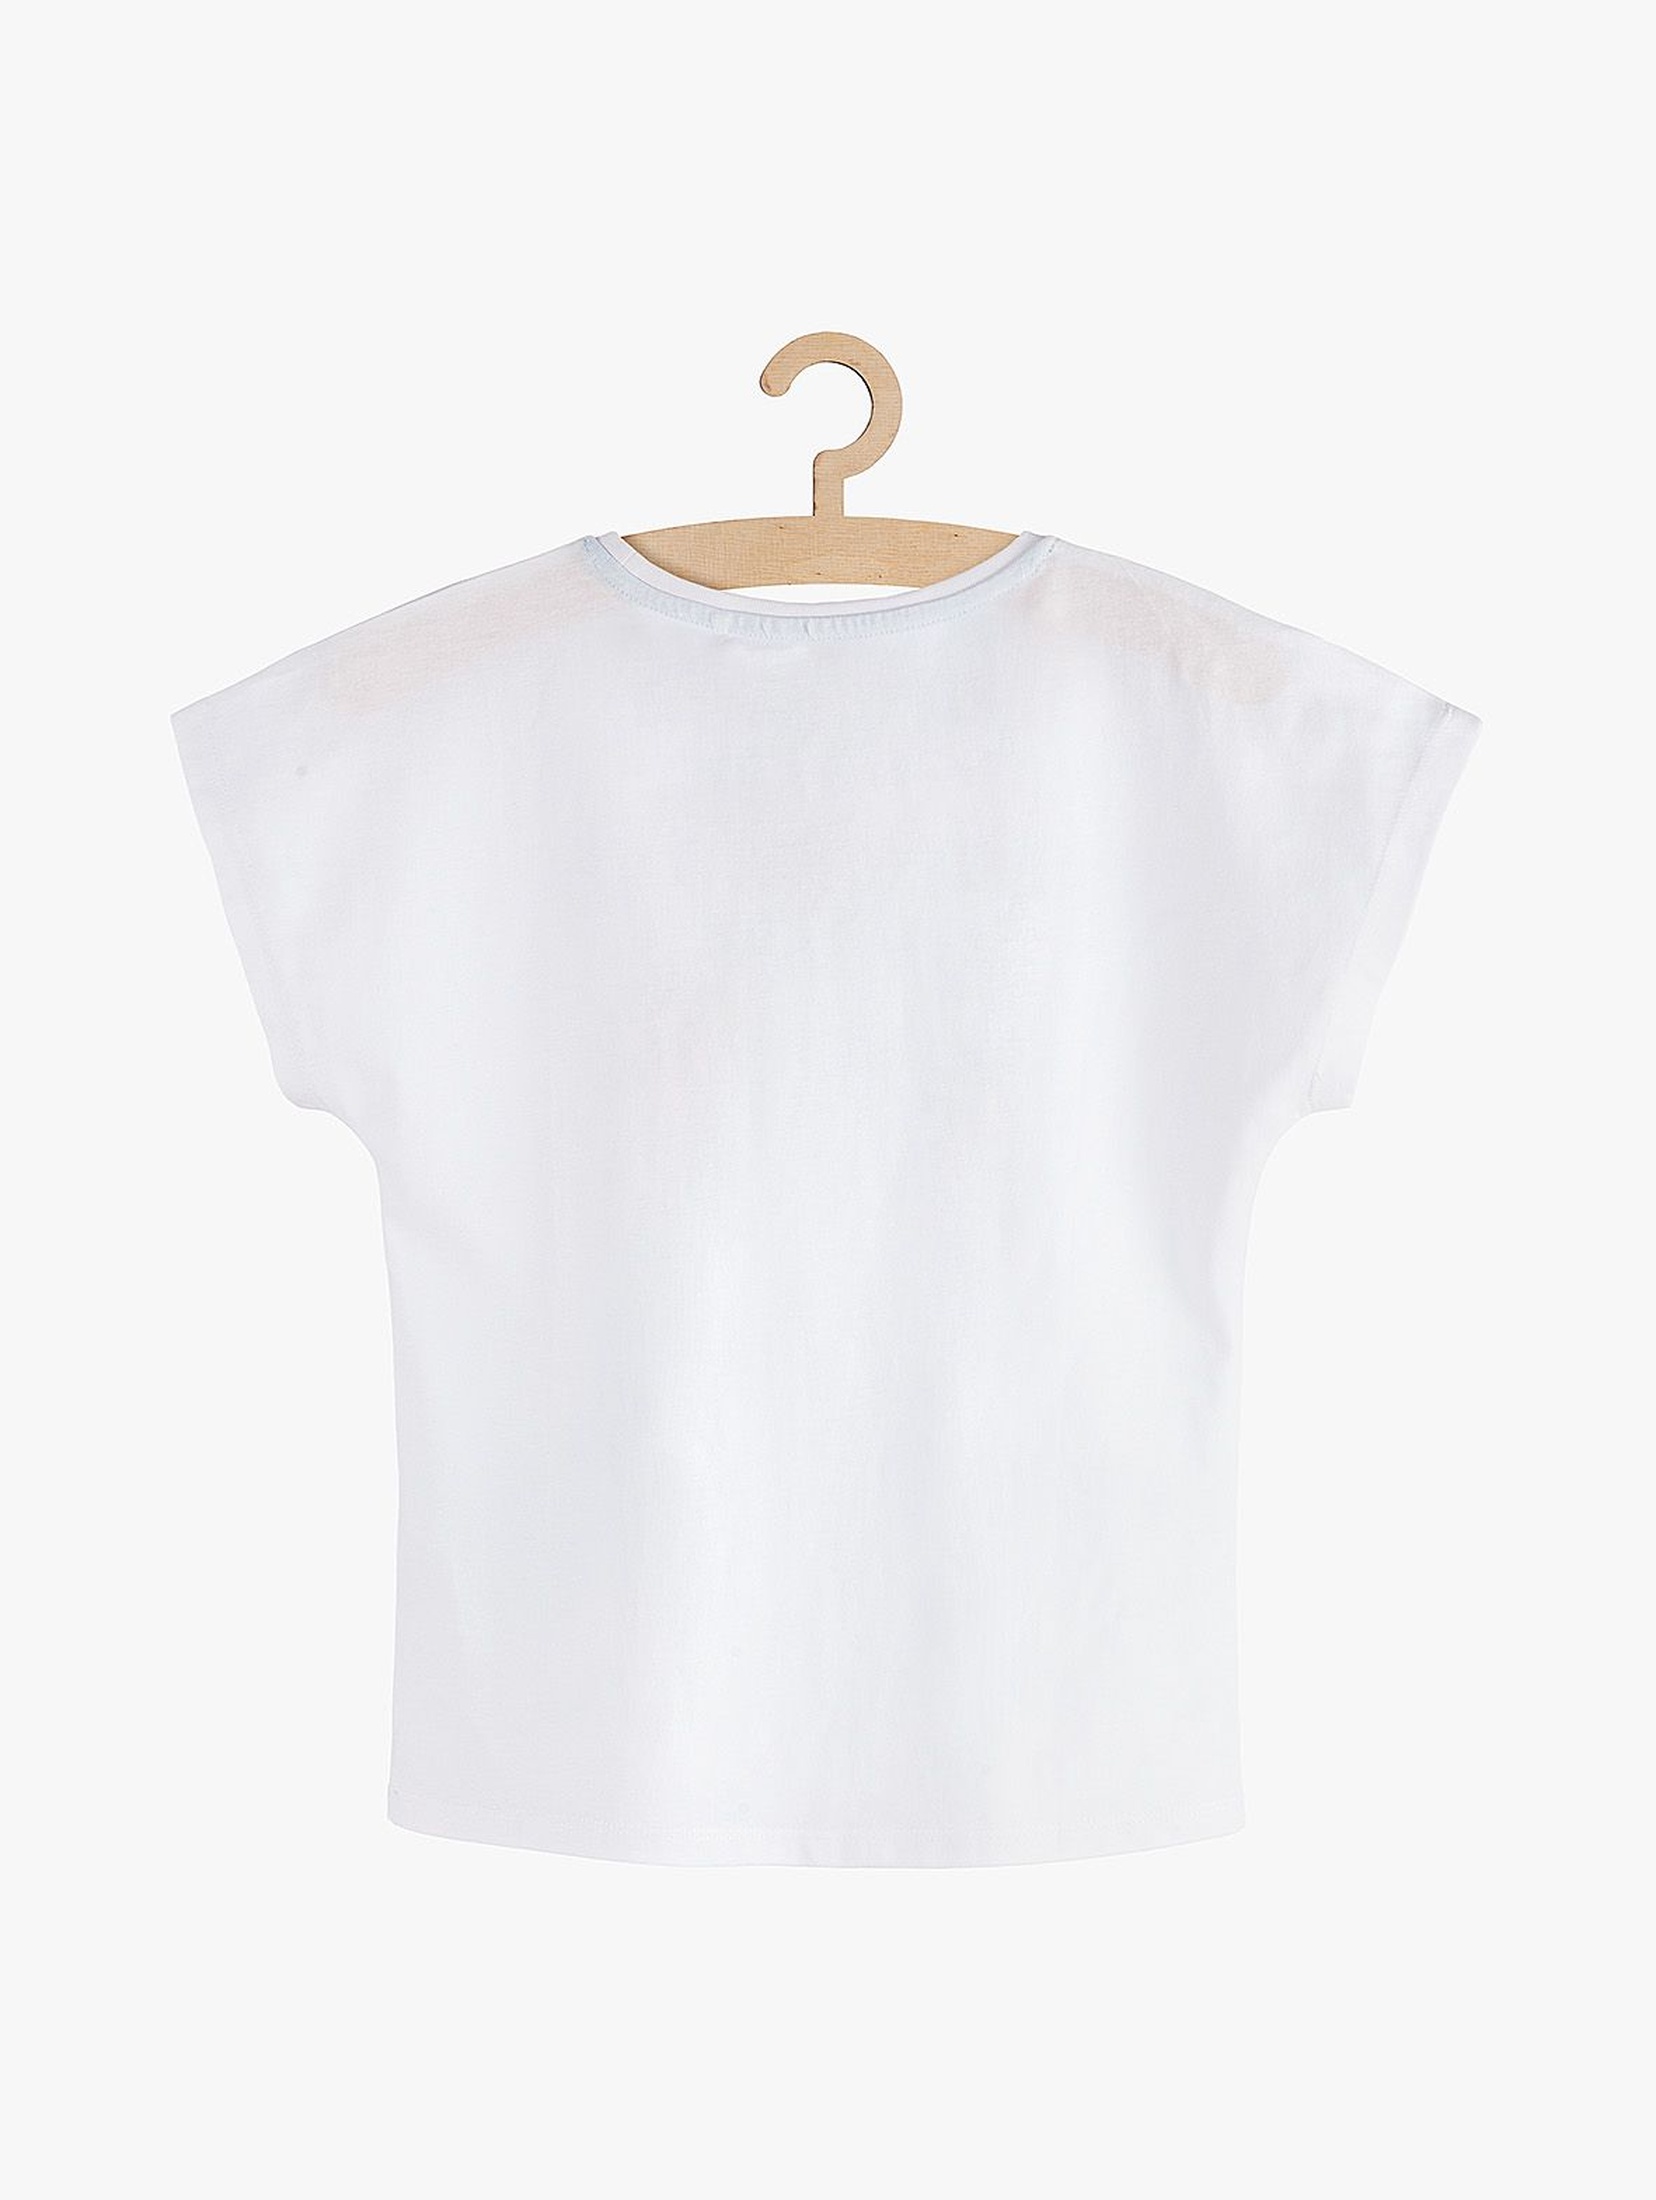 T-Shirt dziewczęcy biały z nadrukiem